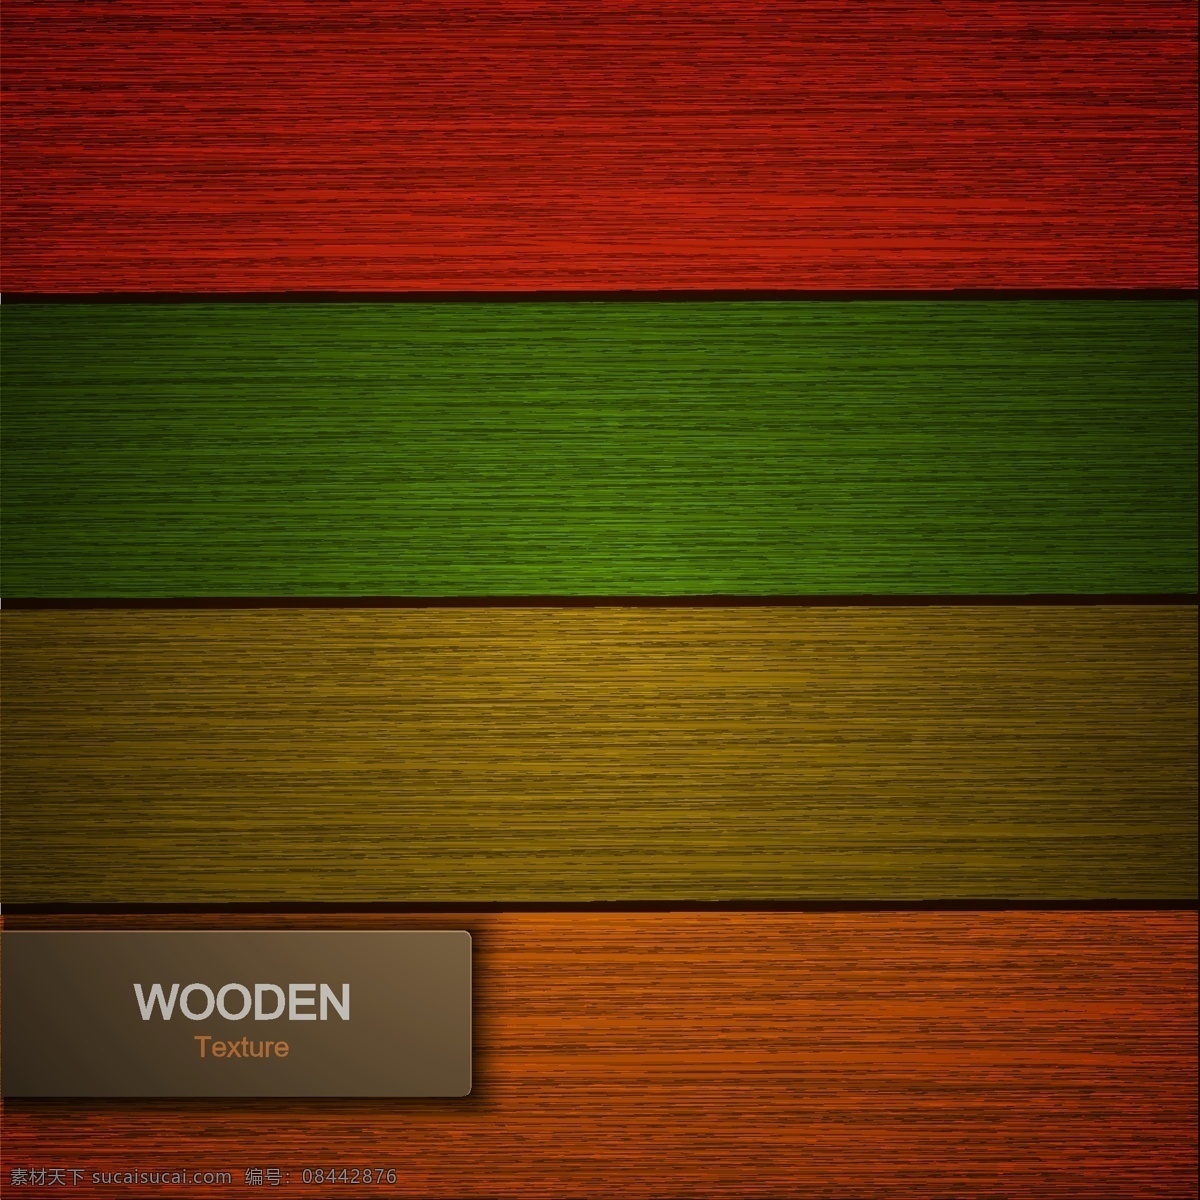 彩色木板背景 彩色木板 背景 木板 彩色木板图 各种木板 木板矢量图